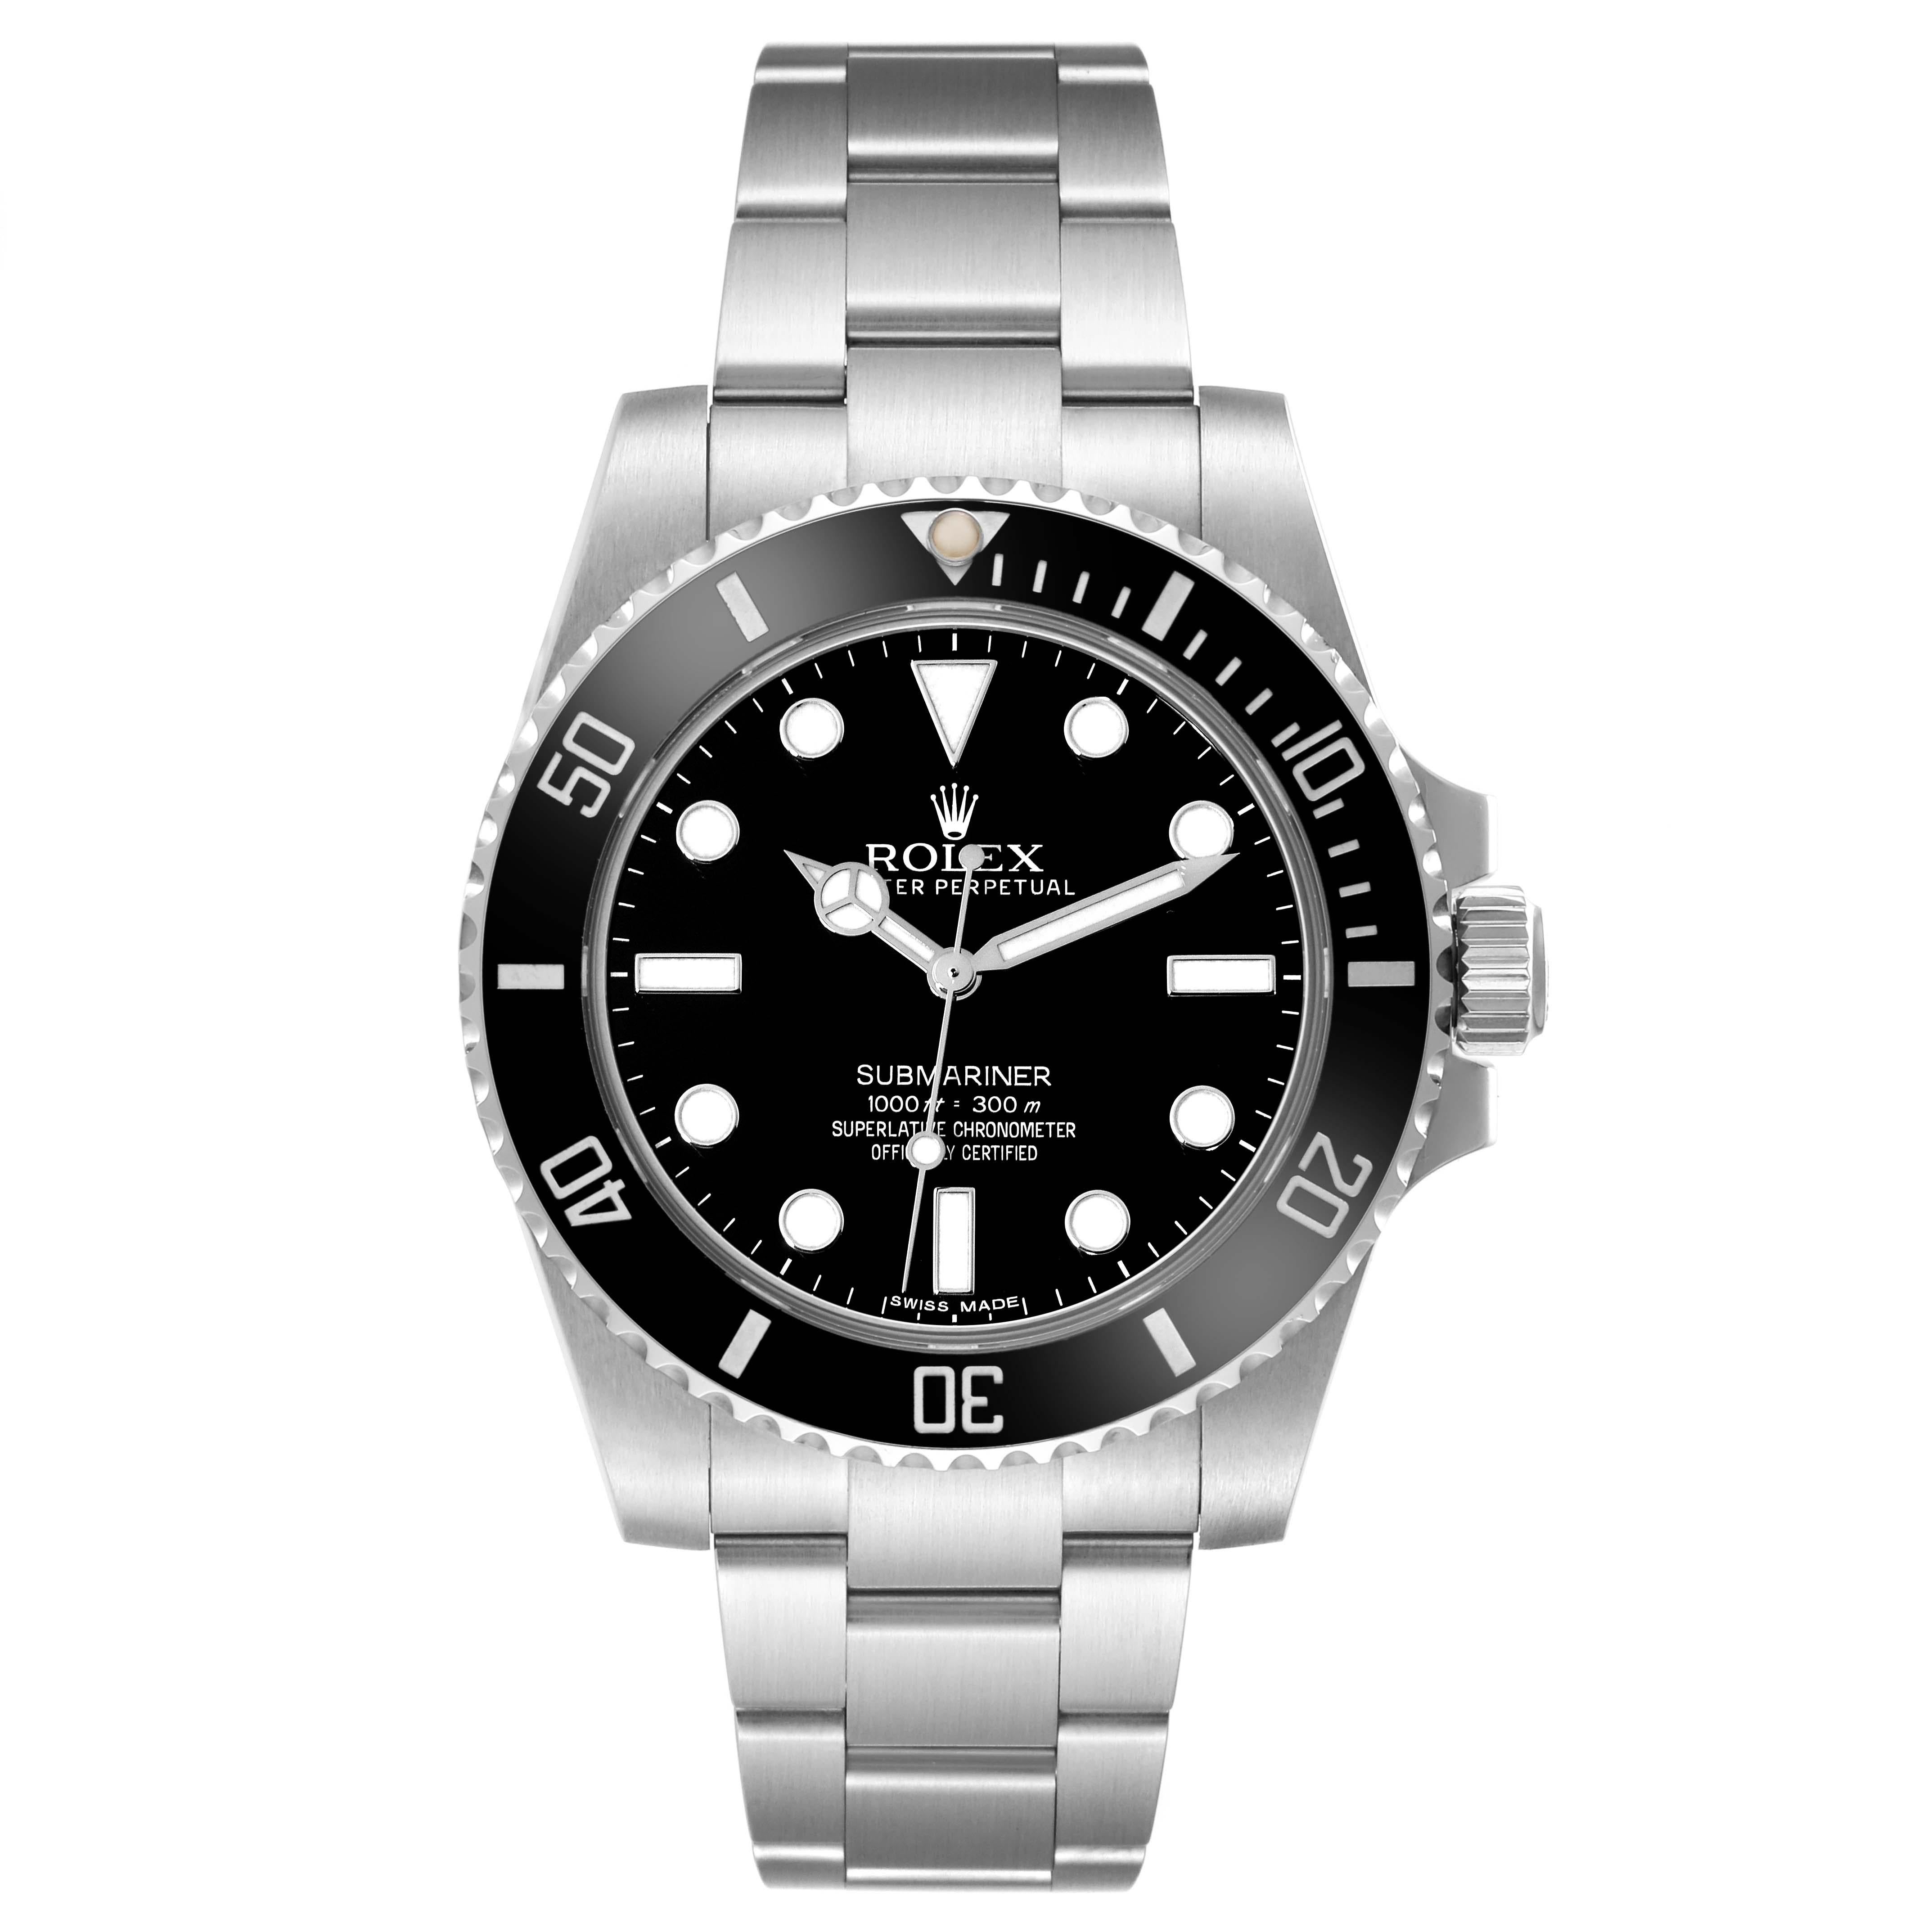 Rolex Submariner Schwarzes Zifferblatt Keramik Lünette Stahl Herrenuhr 114060. Offiziell zertifiziertes Chronometerwerk mit automatischem Aufzug. Gehäuse aus Edelstahl mit einem Durchmesser von 40.0 mm. Rolex Logo auf der Krone. Unidirektional